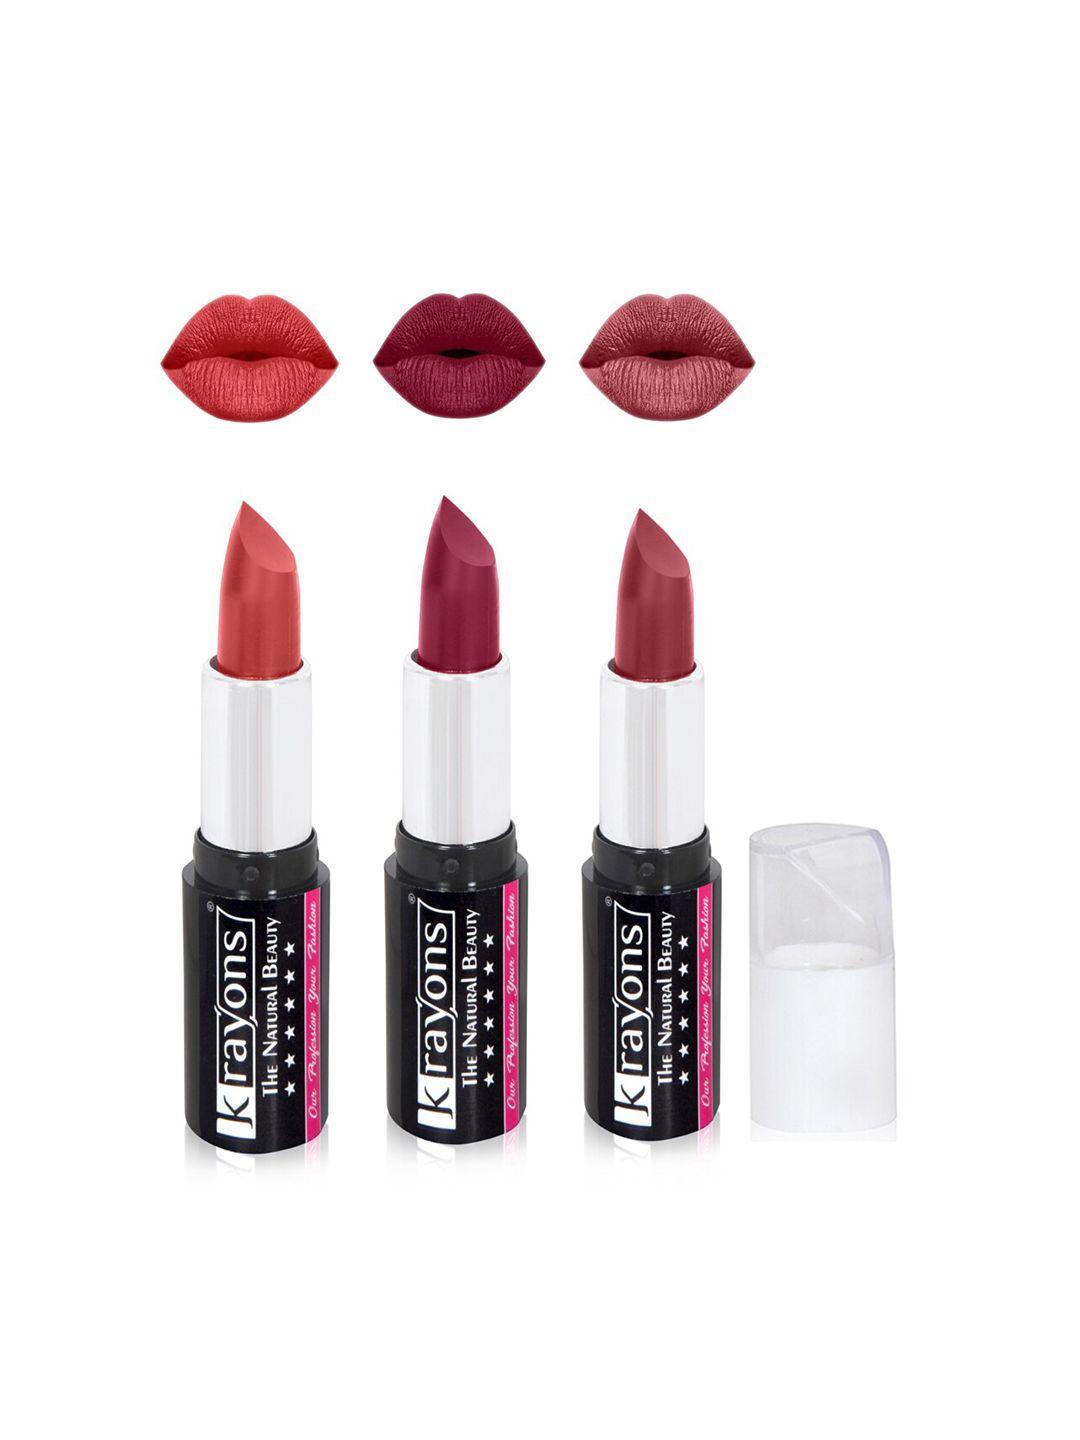 krayons the natural beauty set of 3 moisturizing matte lipsticks - 4 g each